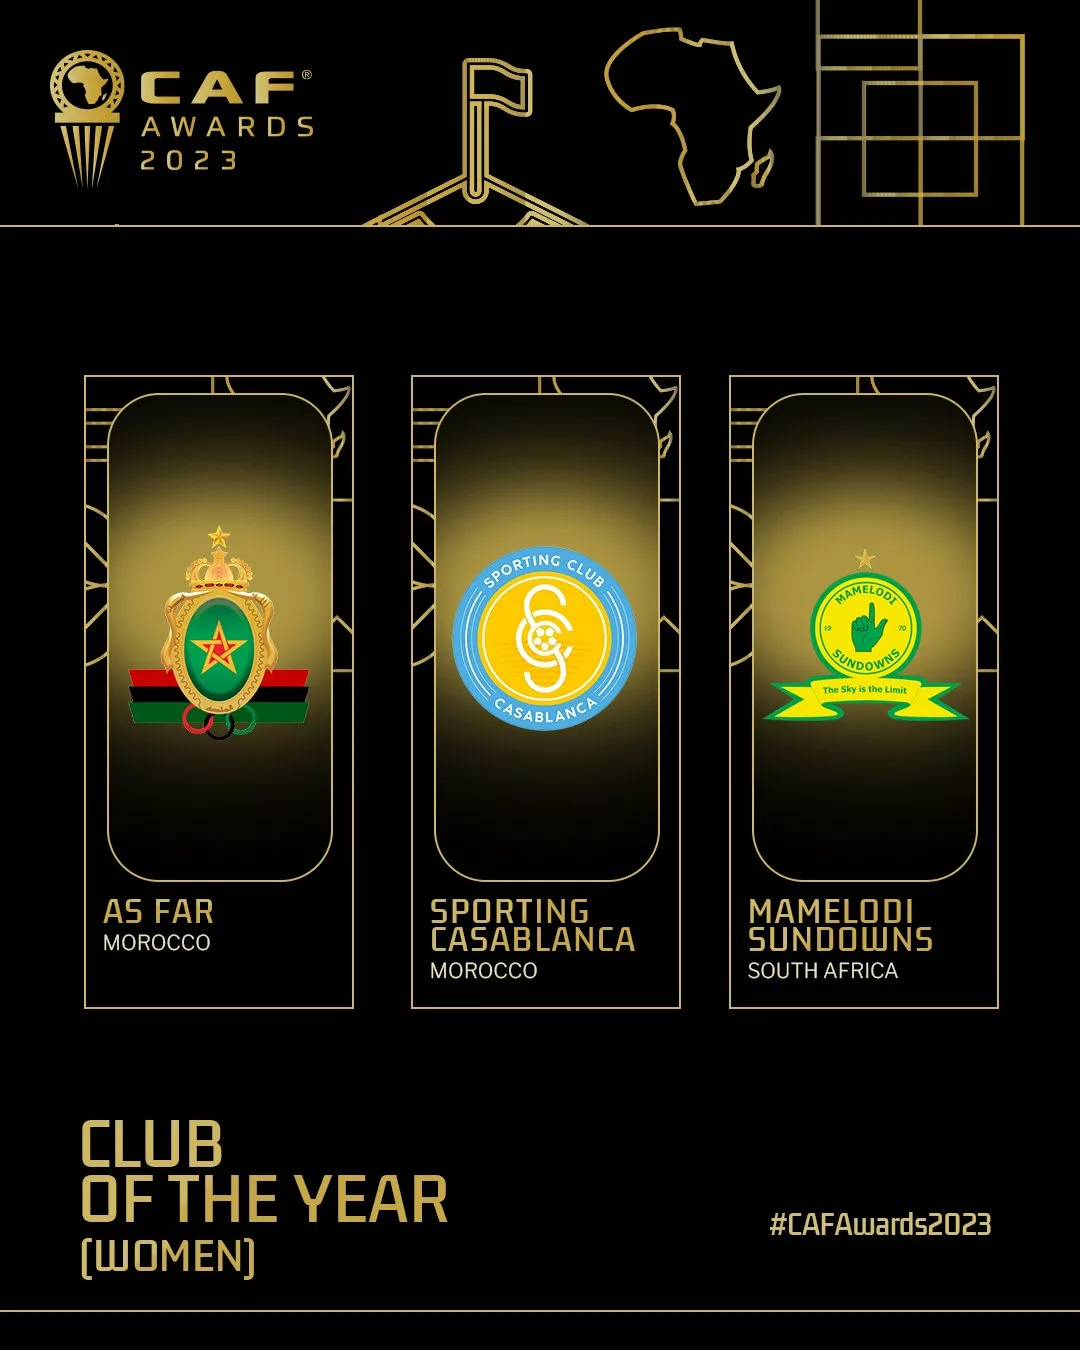 القائمة النهائية لجوائز الأفضل في إفريقيا 2023 " إكتساح مغربي وصدمة مصر بالثلاثة " - صورة